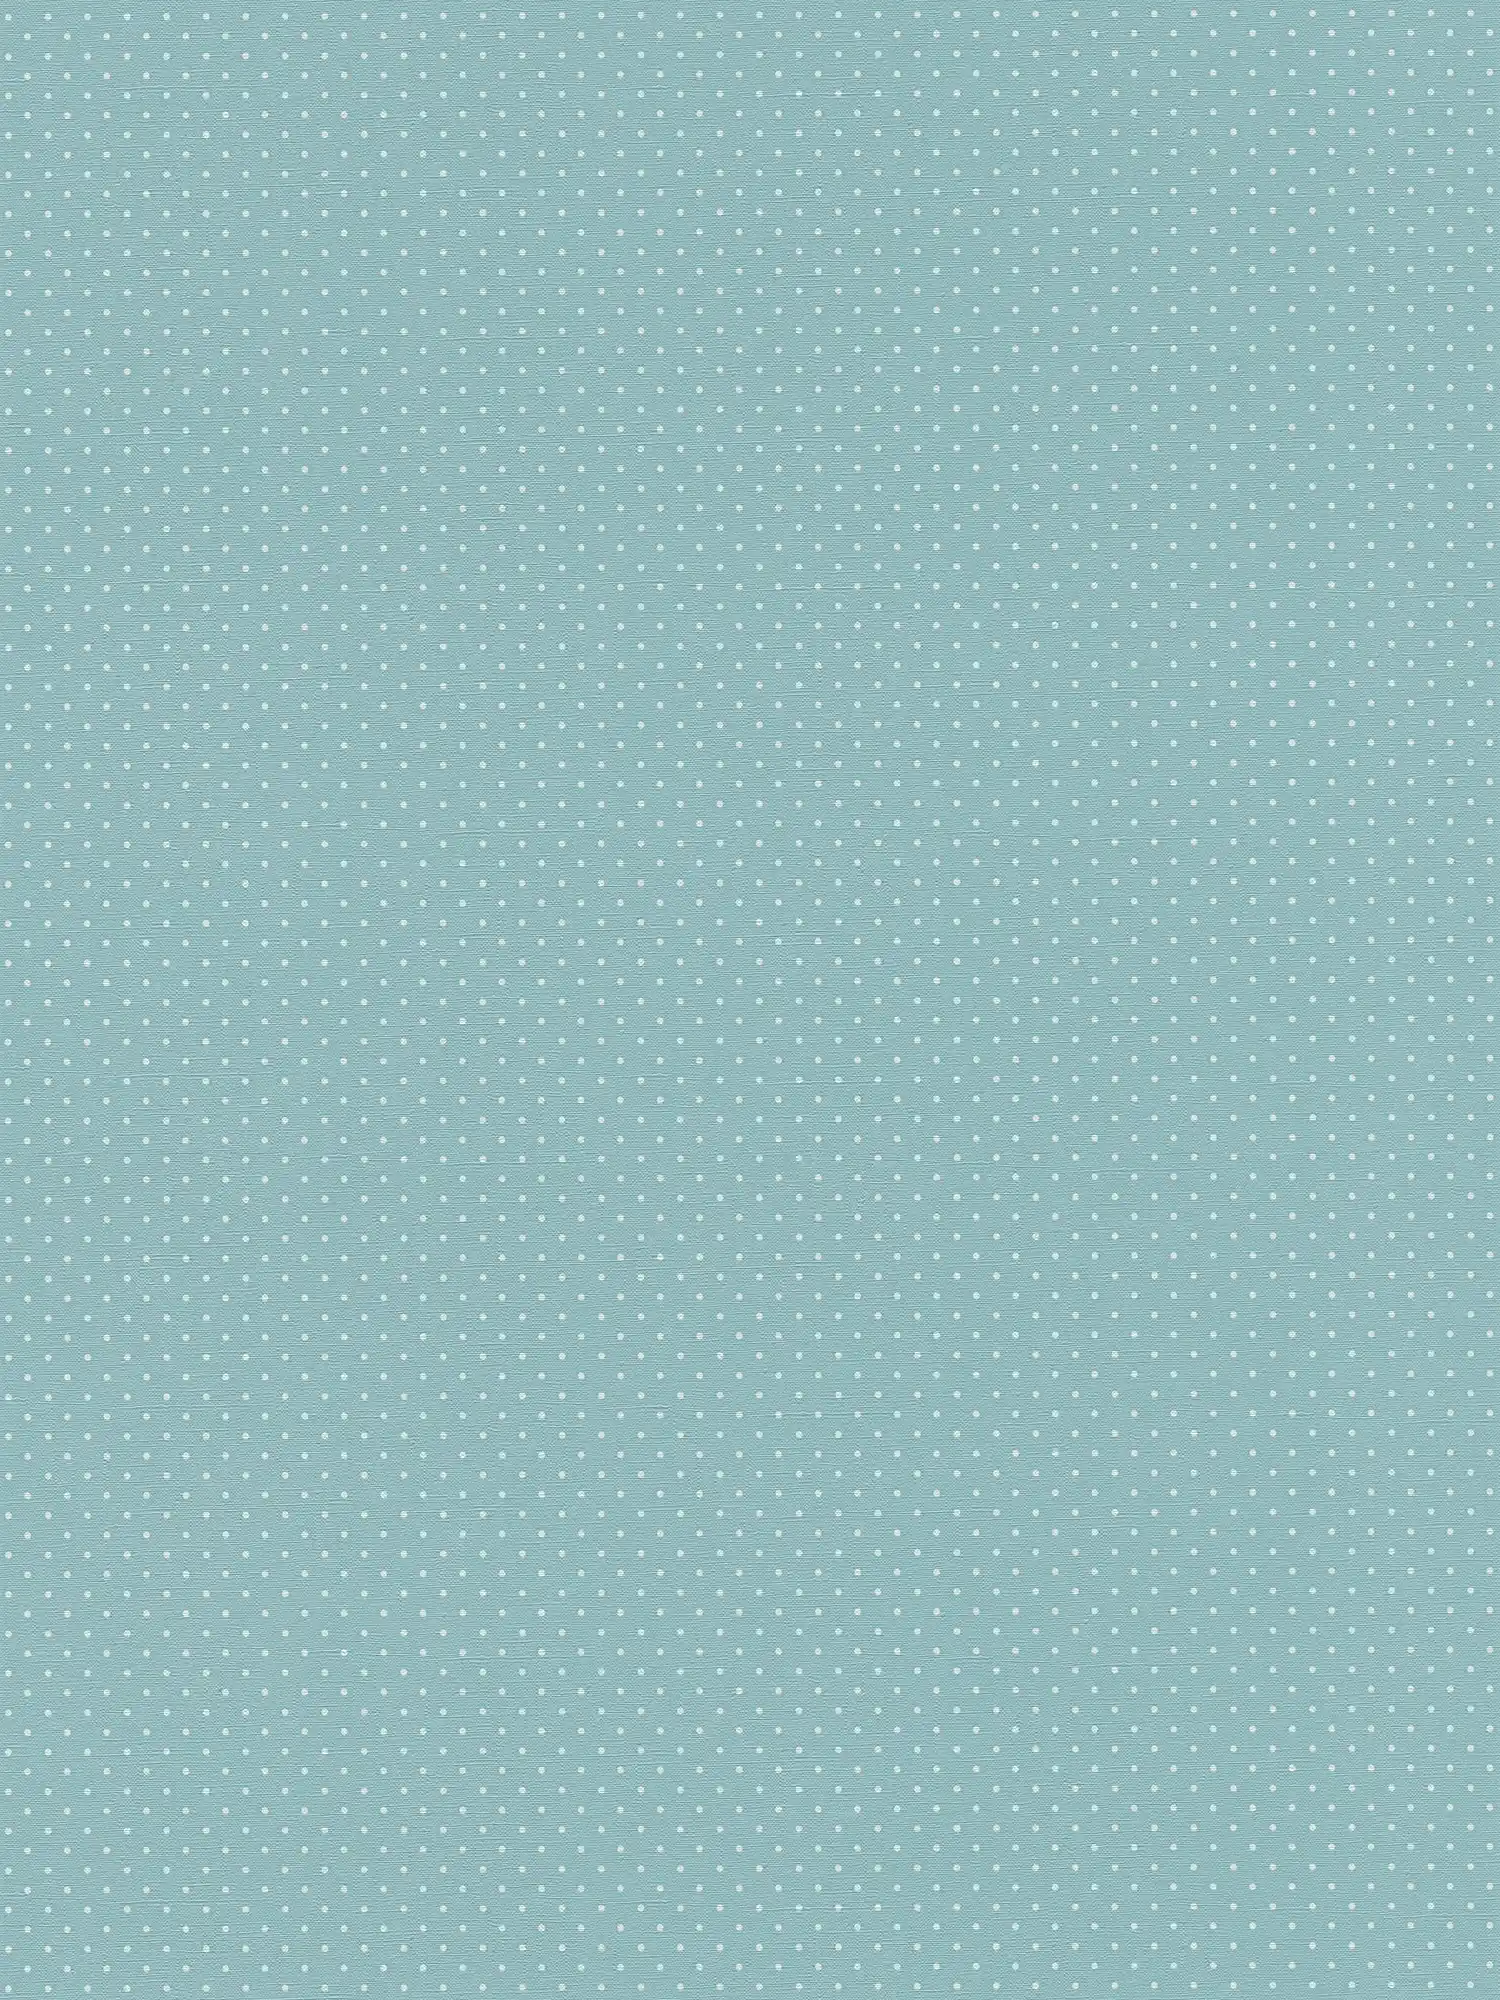 Vliestapete mit kleinem Punktmuster – Blau, Weiß
